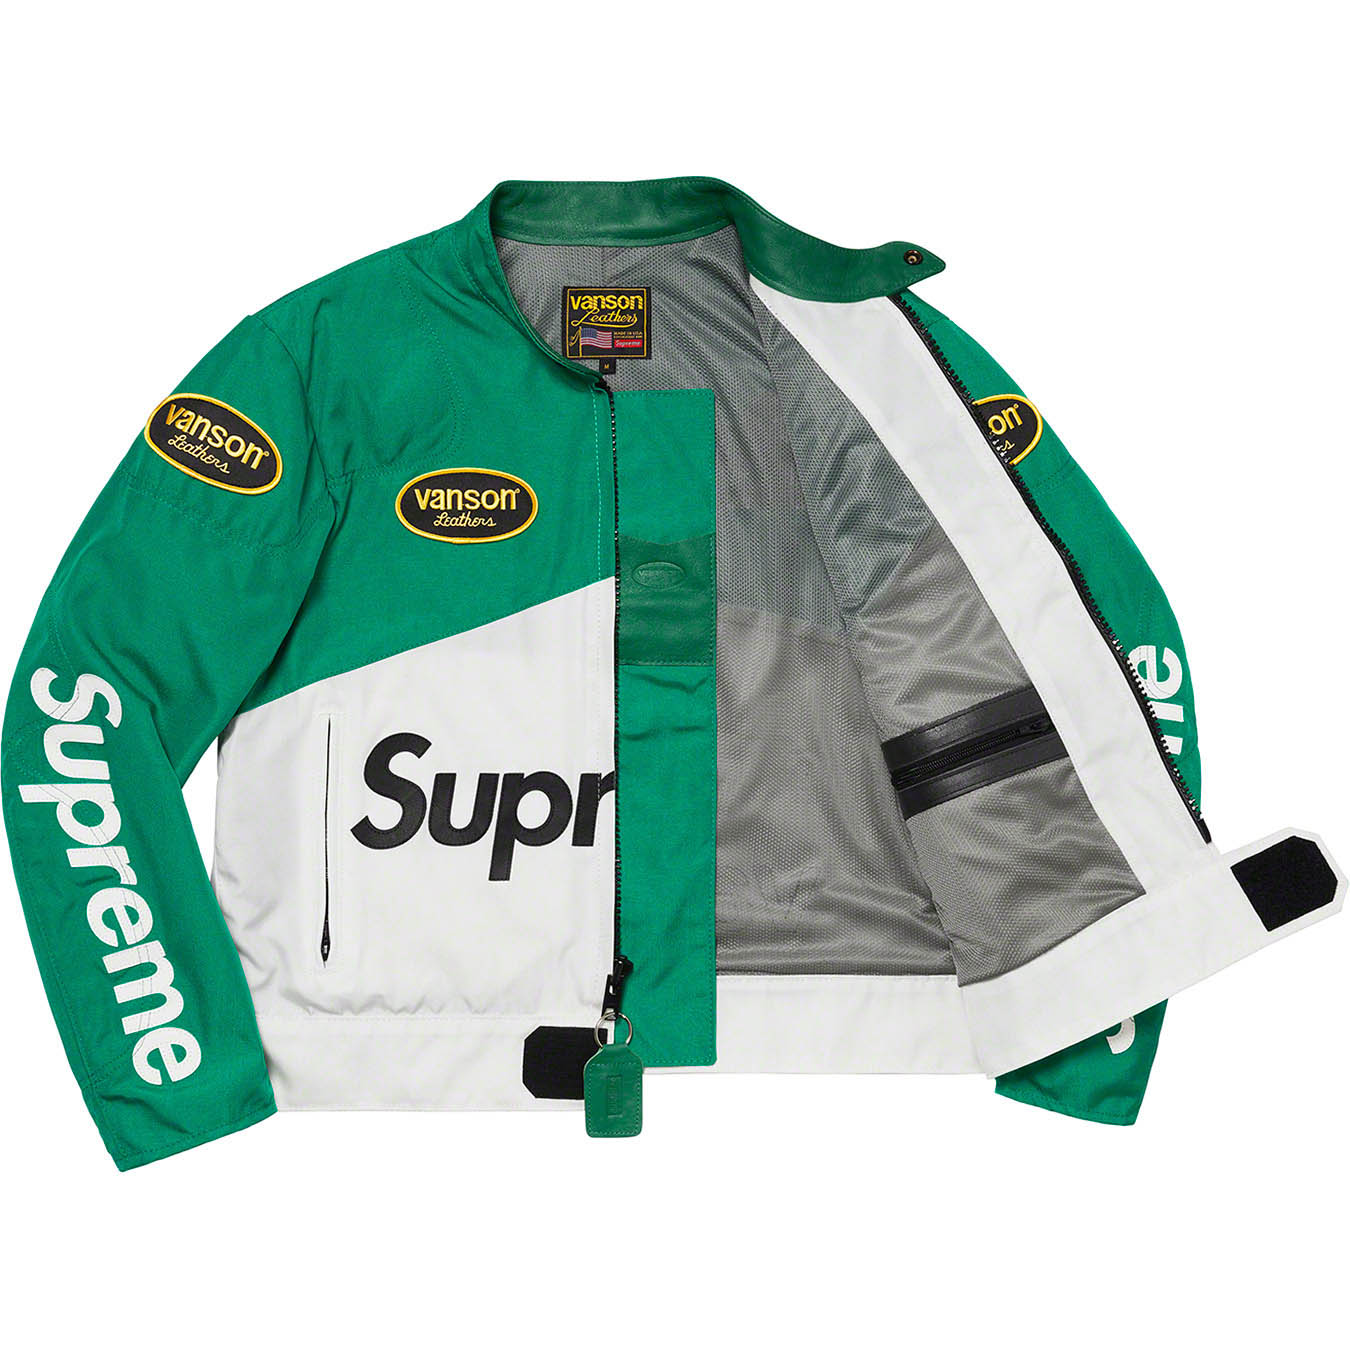 Supreme Supreme®/Vanson Leathers® Cordura® Jacket